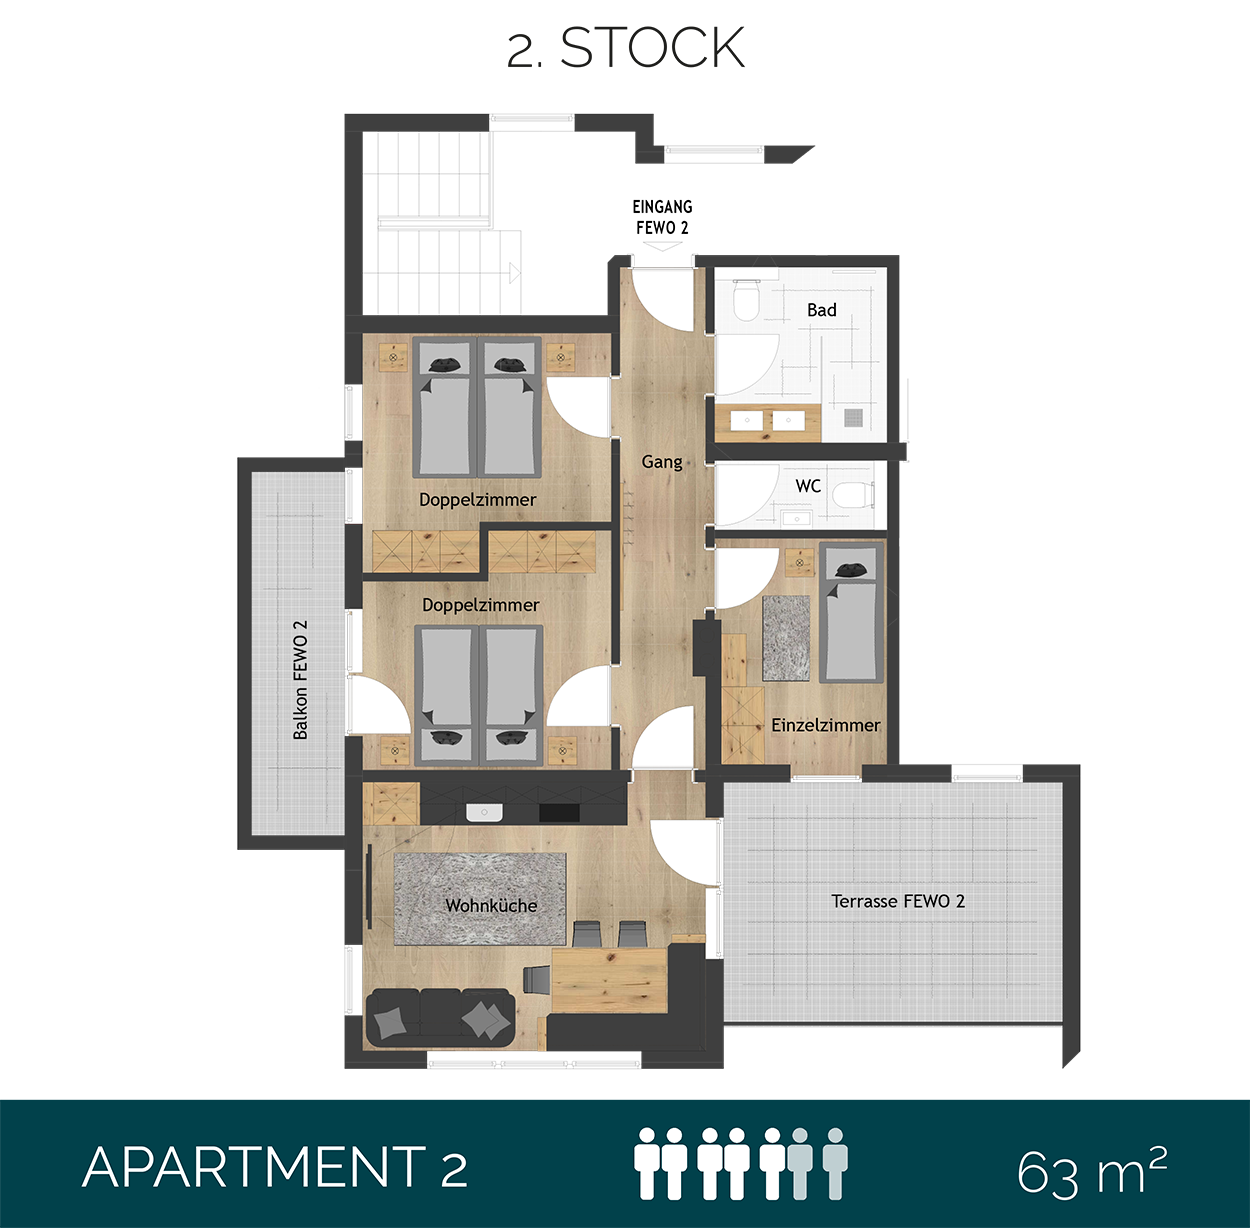 Apartment 2 OG2 63qm